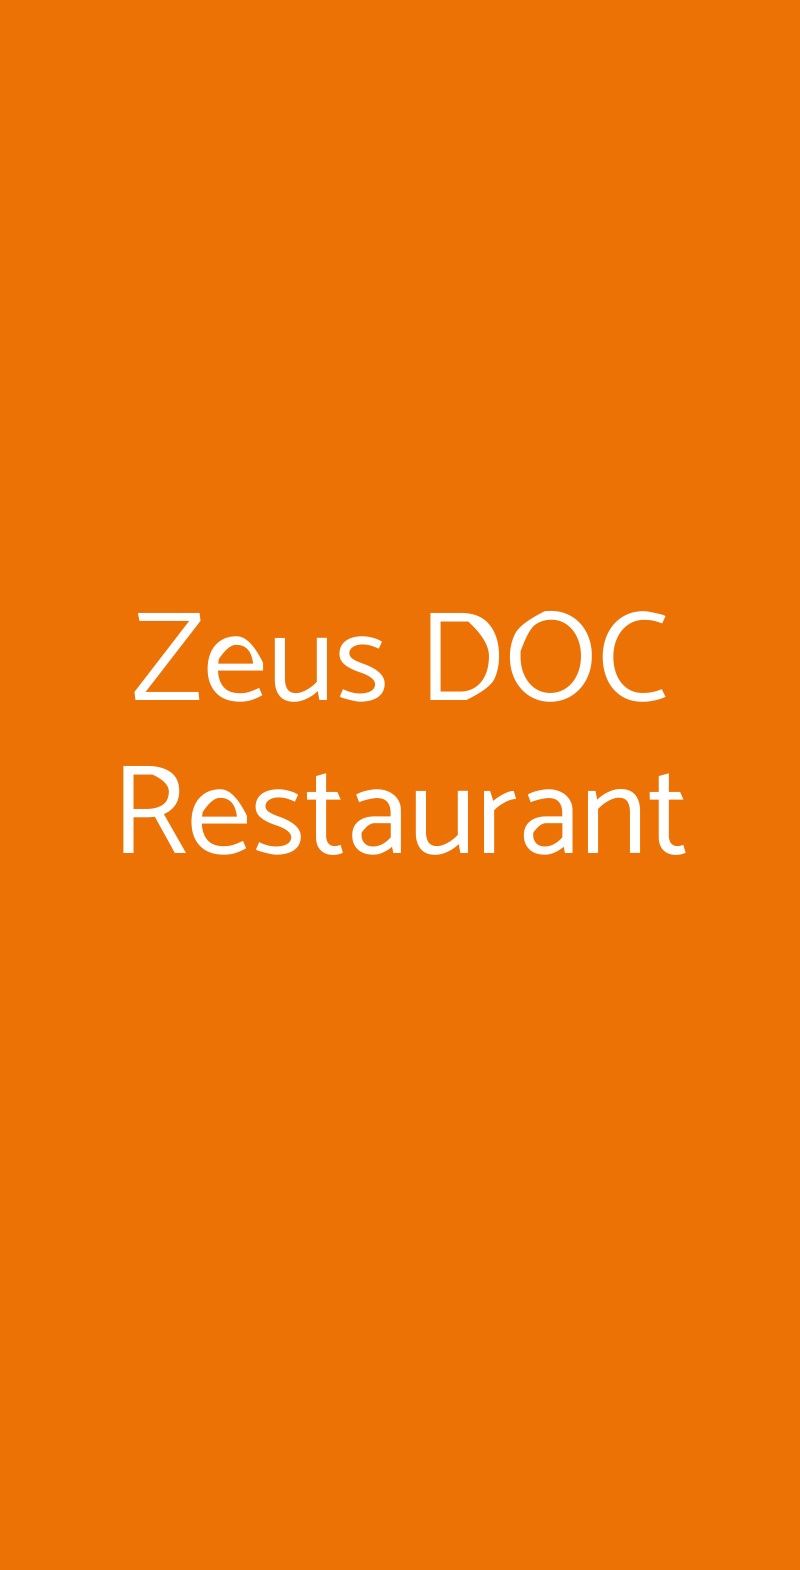 Zeus DOC Restaurant Noventa Padovana menù 1 pagina